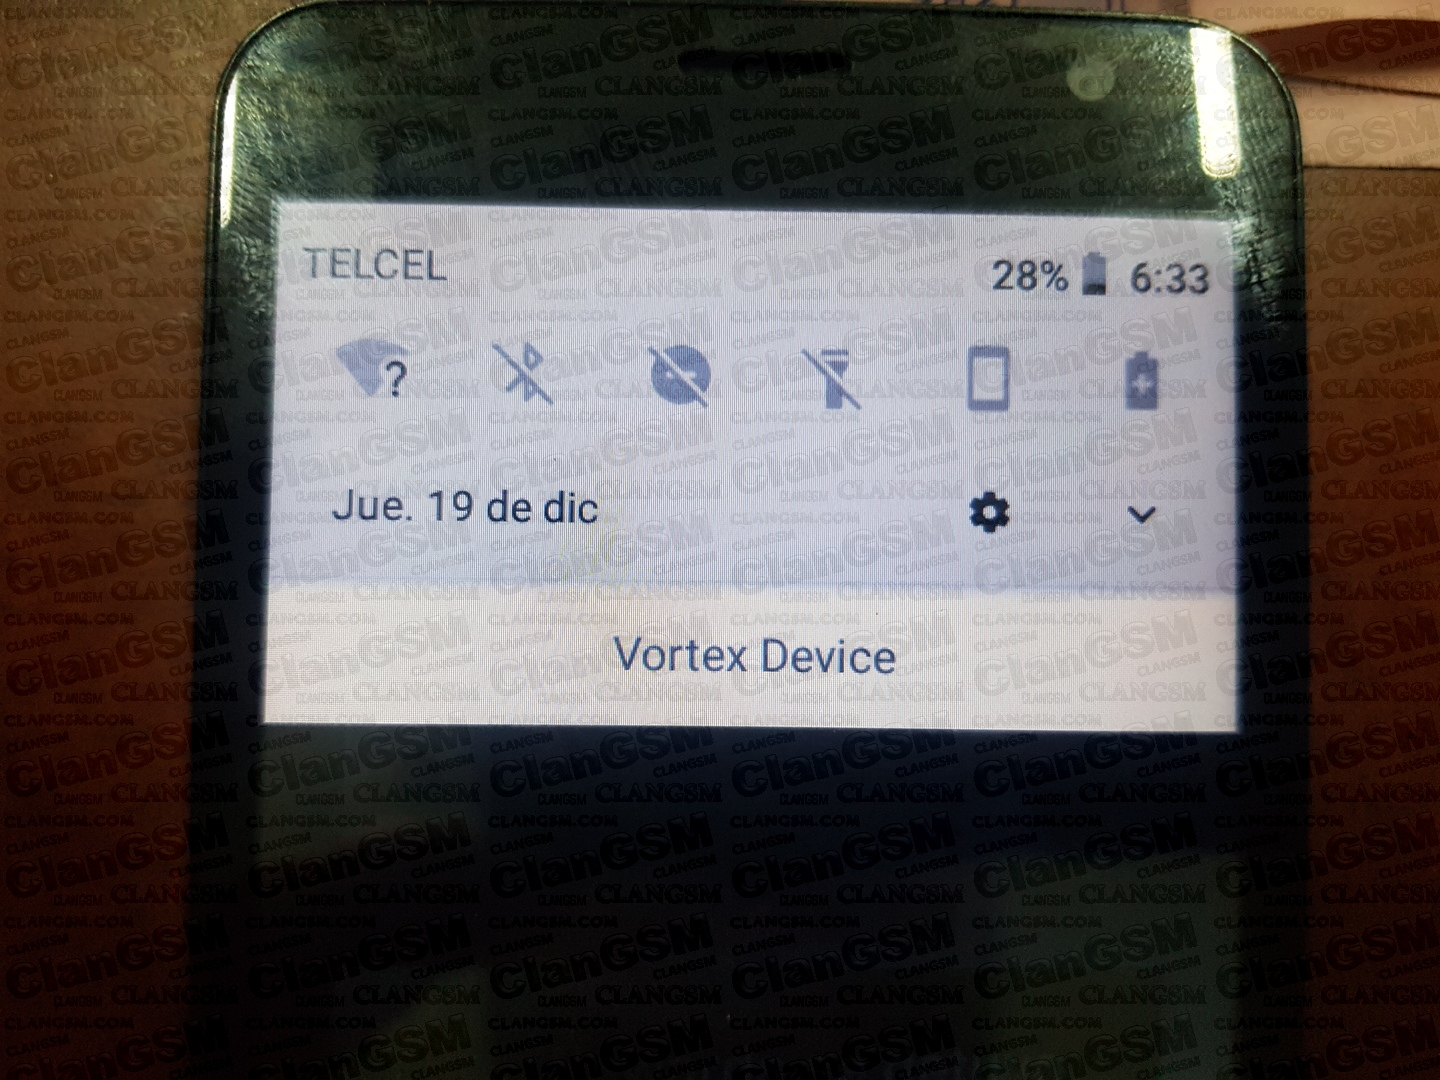 Unlock Vortex Synq Android 8 1 Aporte Clan Gsm Union De Los Expertos En Telefonia Celular